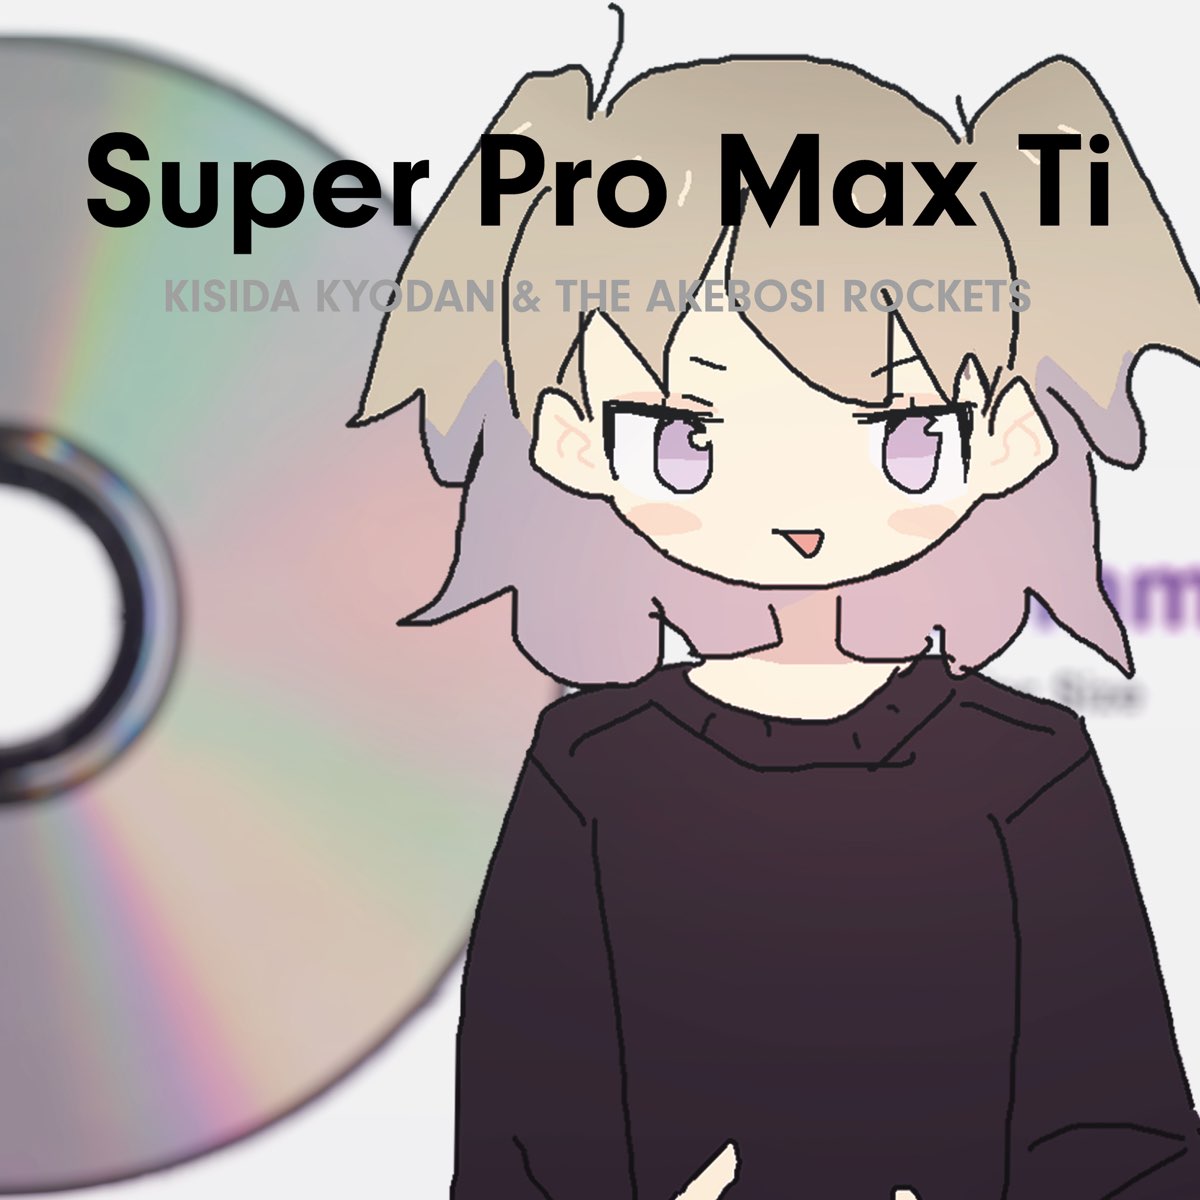 Super Pro Max Ti By Kishida Kyodan The Akeboshi Rockets On Apple Music